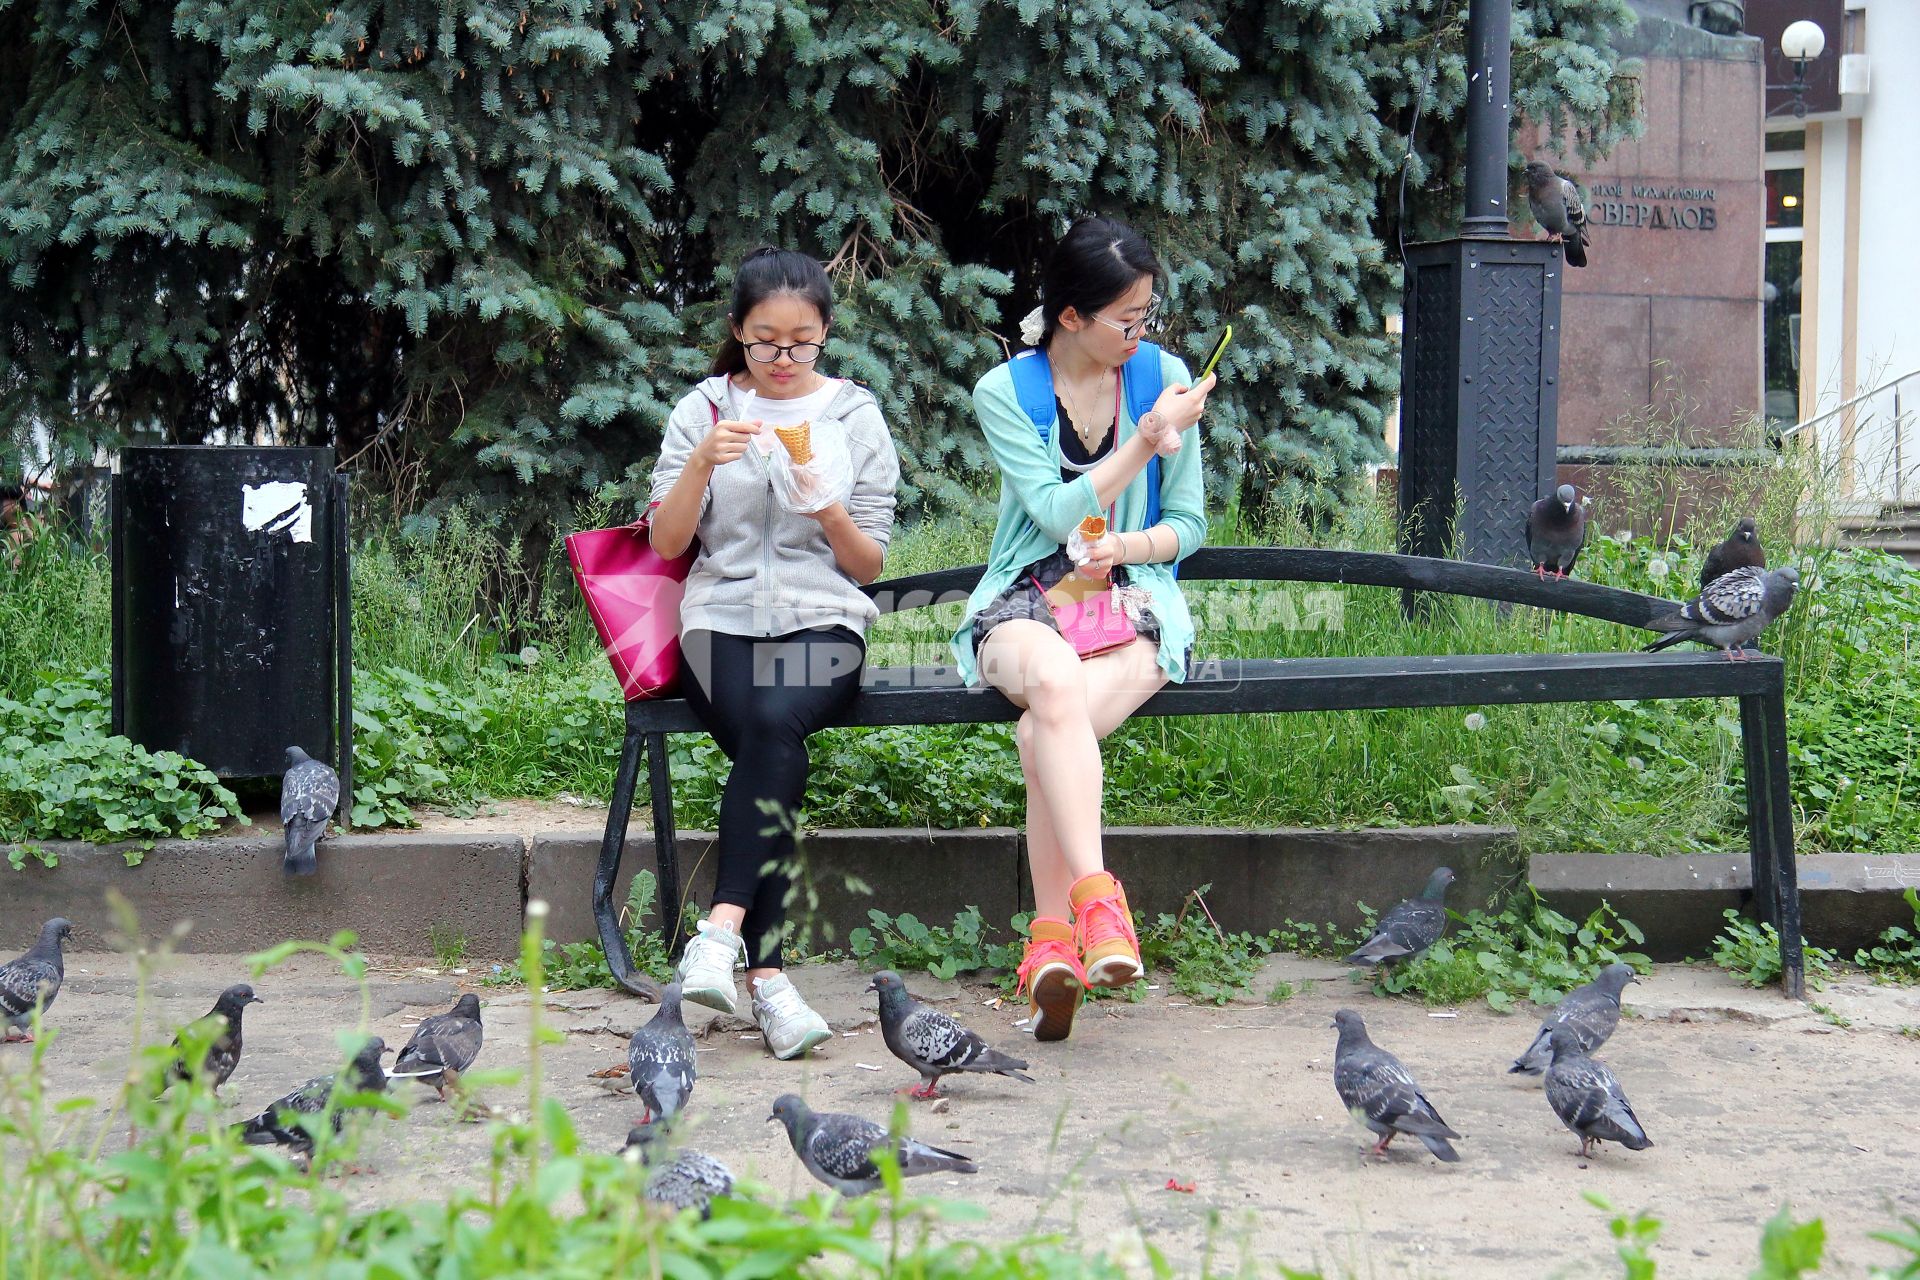 Нижний Новгород. Девушки едят мороженое и фотографируют голубей.